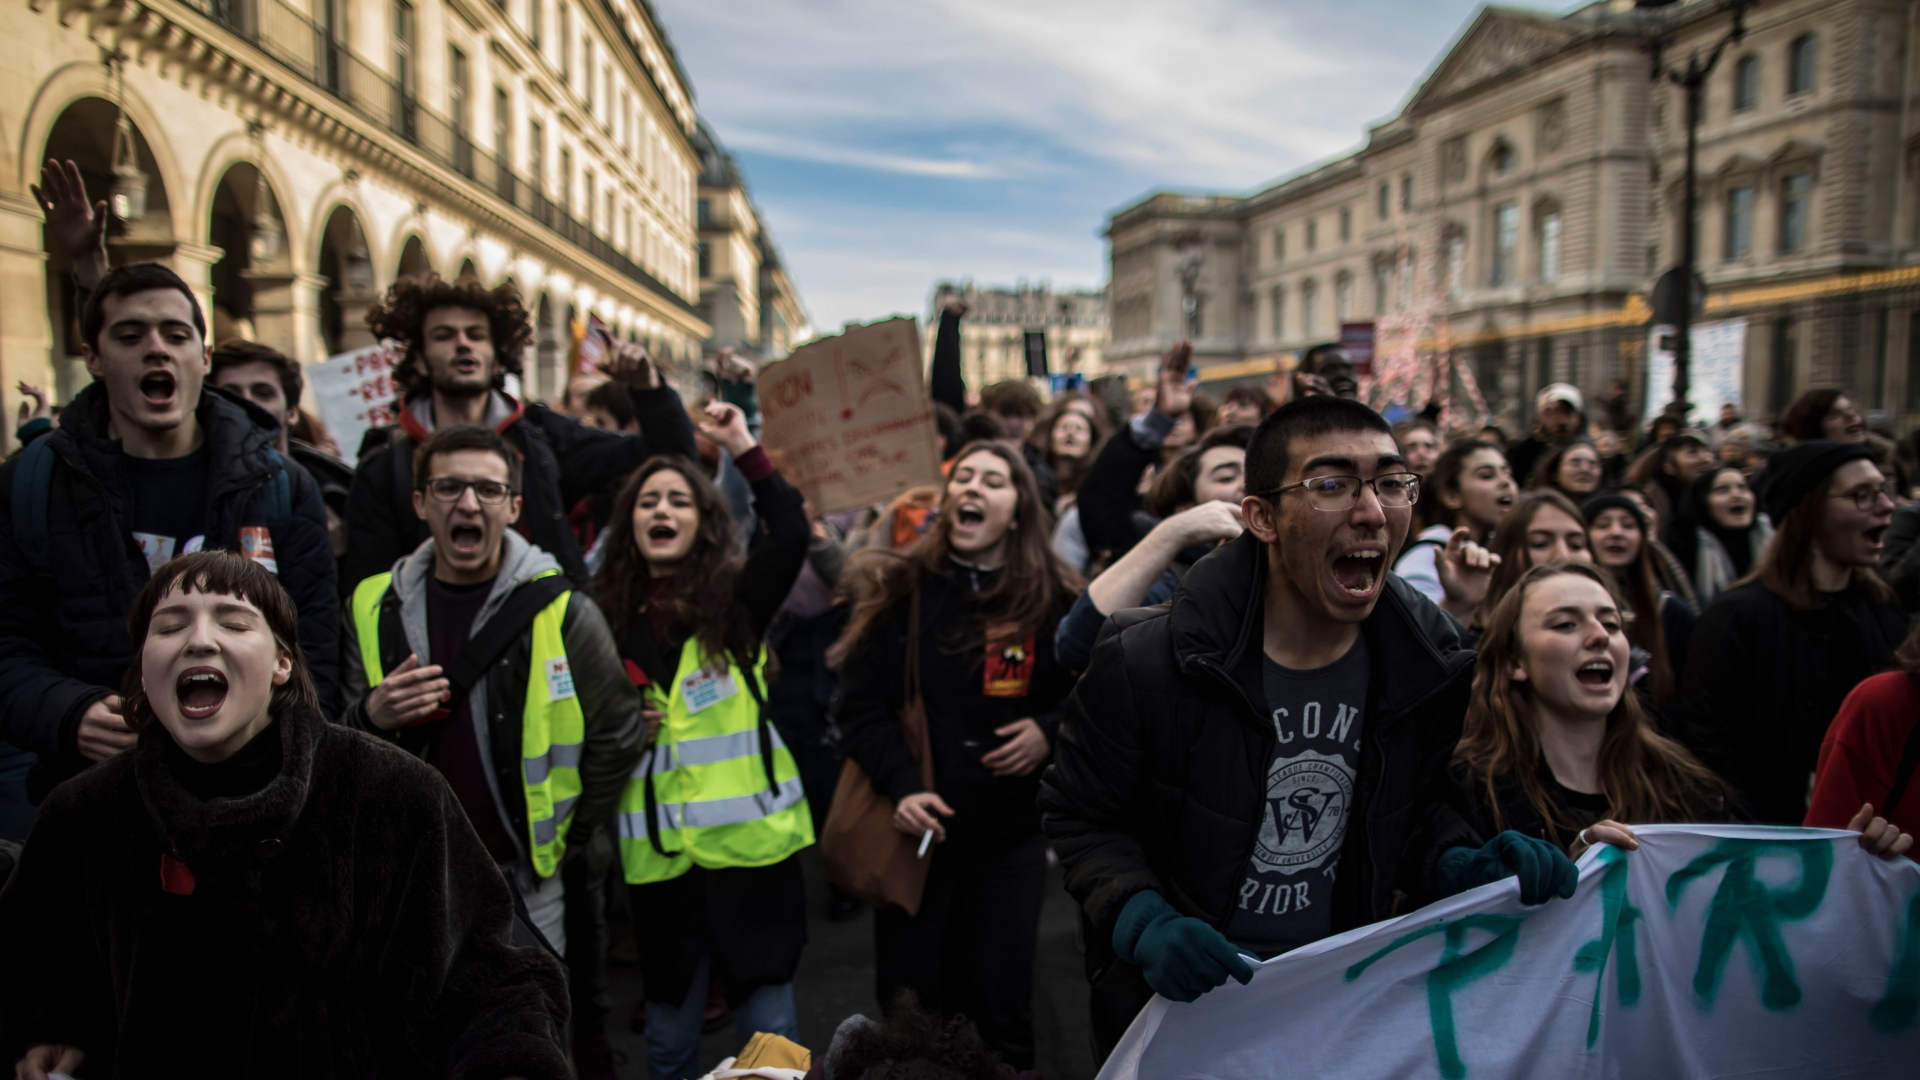 Teilnehmer einer Demonstration in Paris (Bild vom 5. Februar 2019) | IAN LANGSDON/EPA-EFE/REX